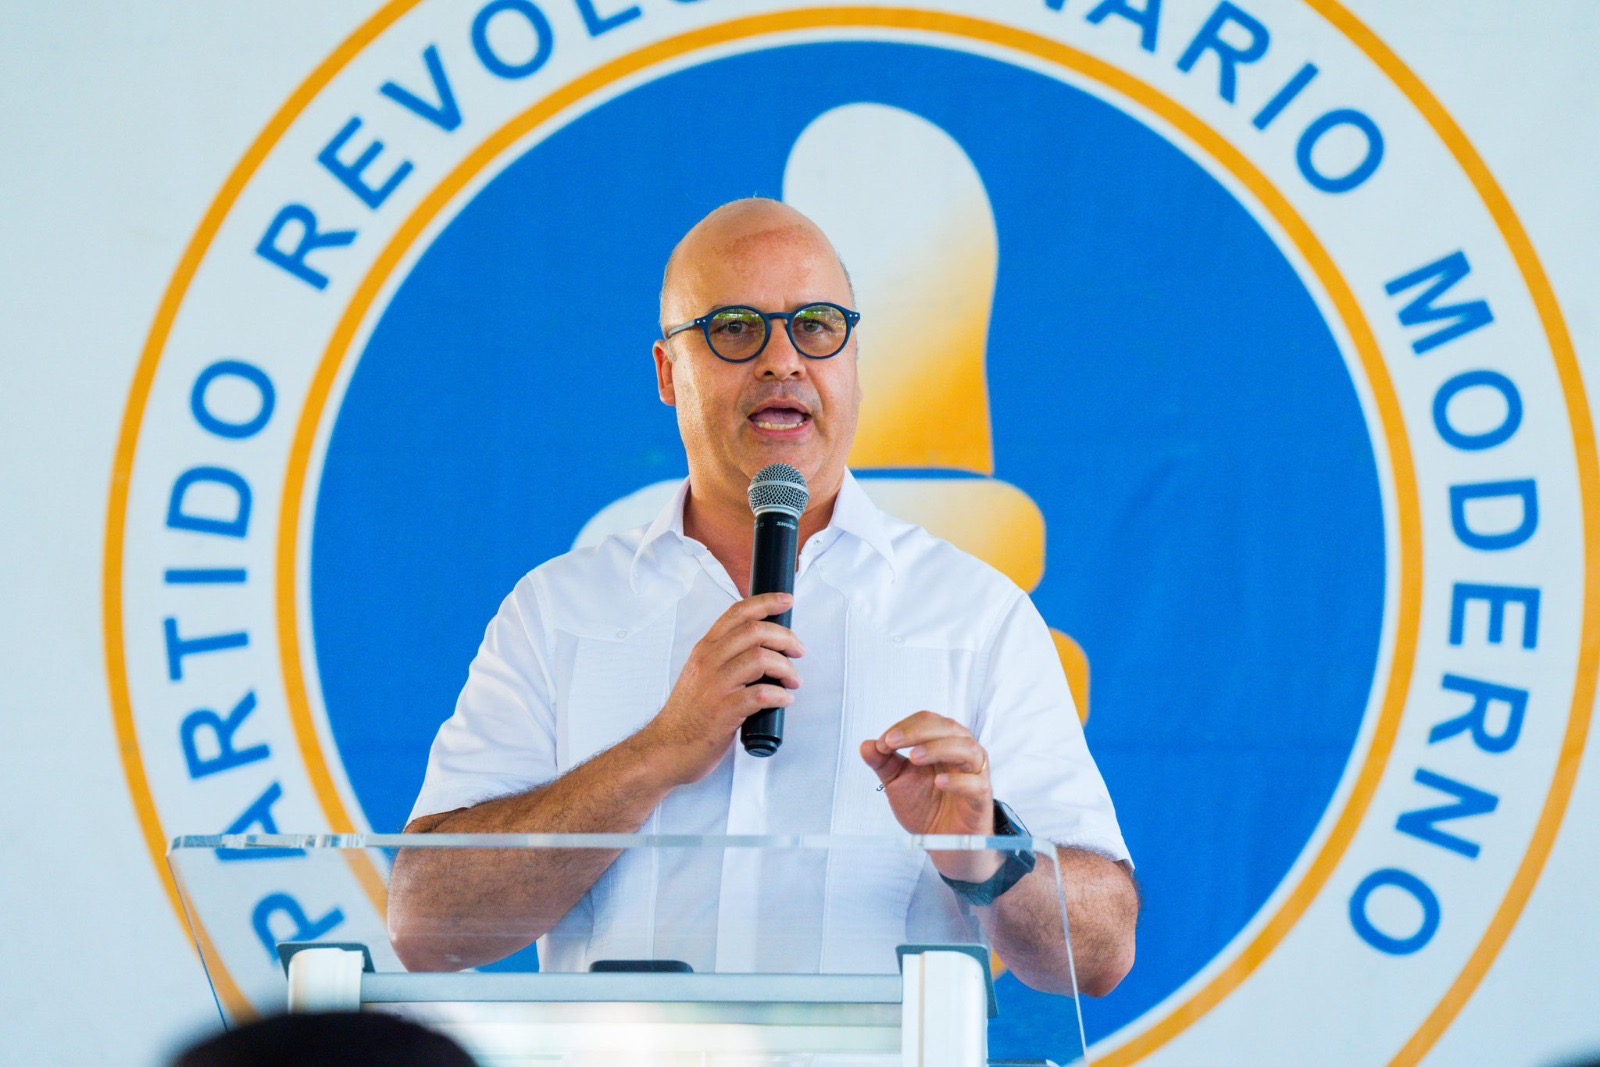  Ministro Igor Rodríguez asegura oposición hace daño a democracia en RD con denuncias irresponsables